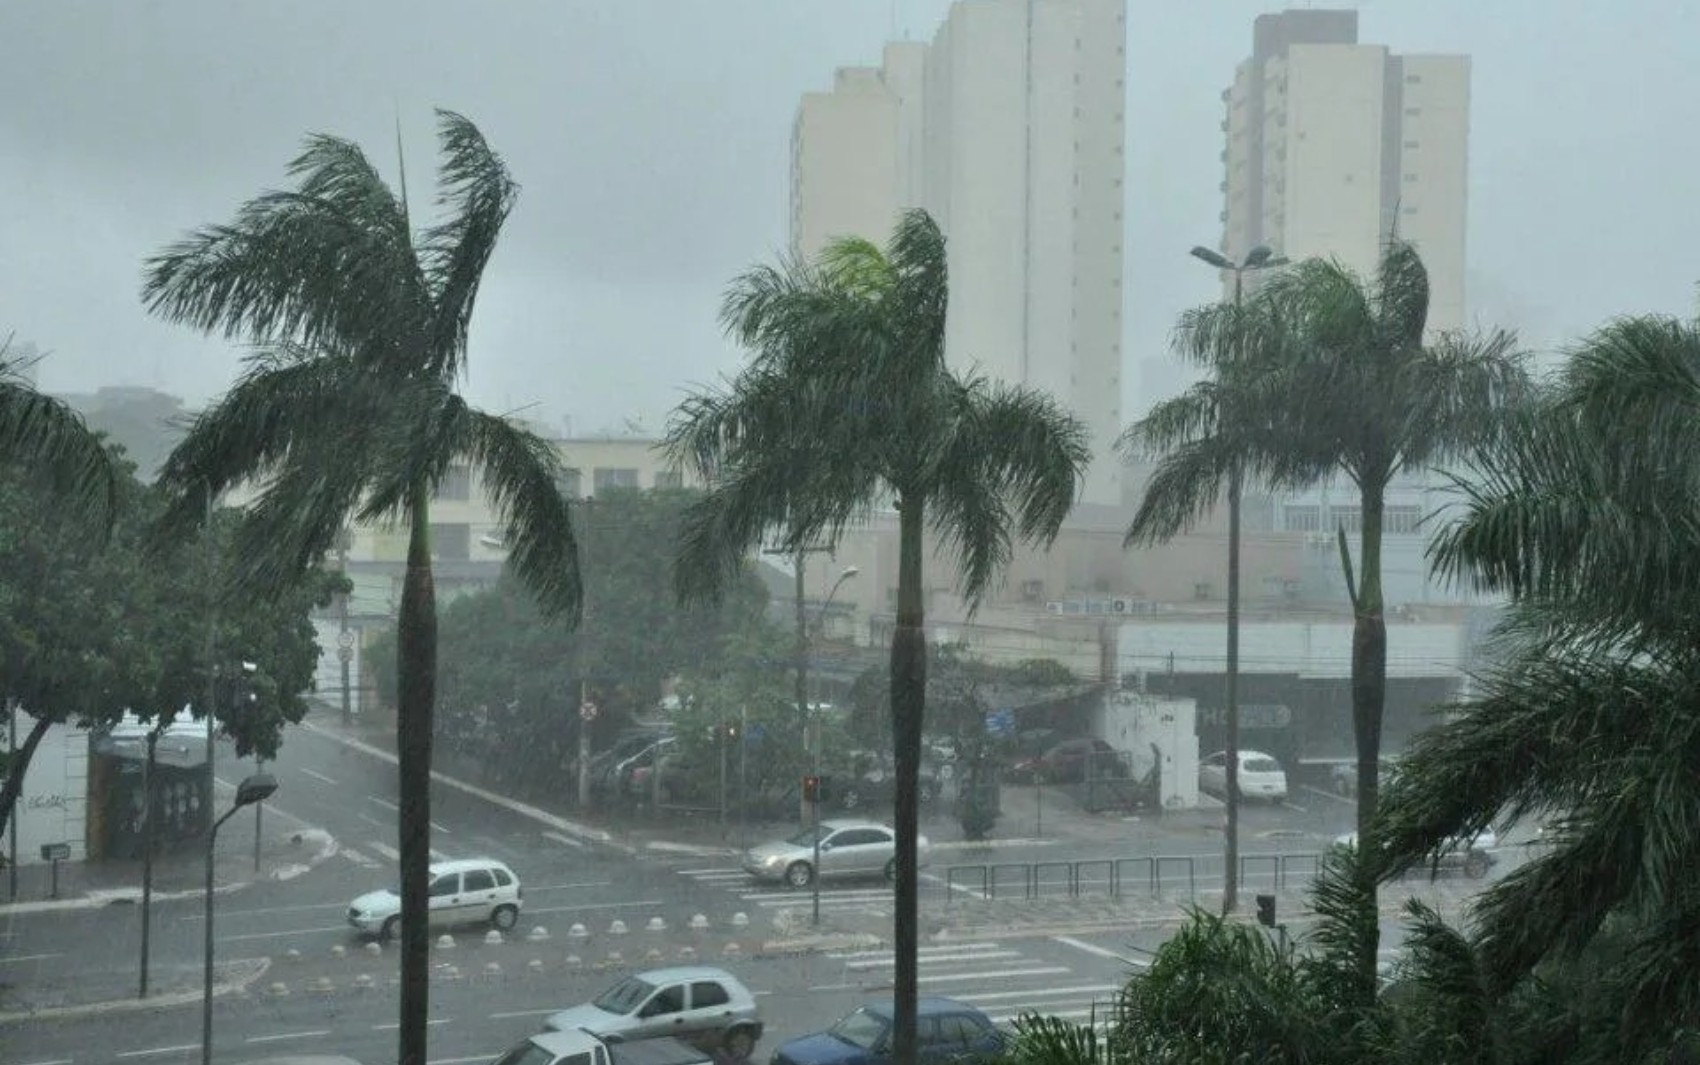 Goiás está sob alerta de chuvas intensas nesta quarta-feira, diz Cimehgo